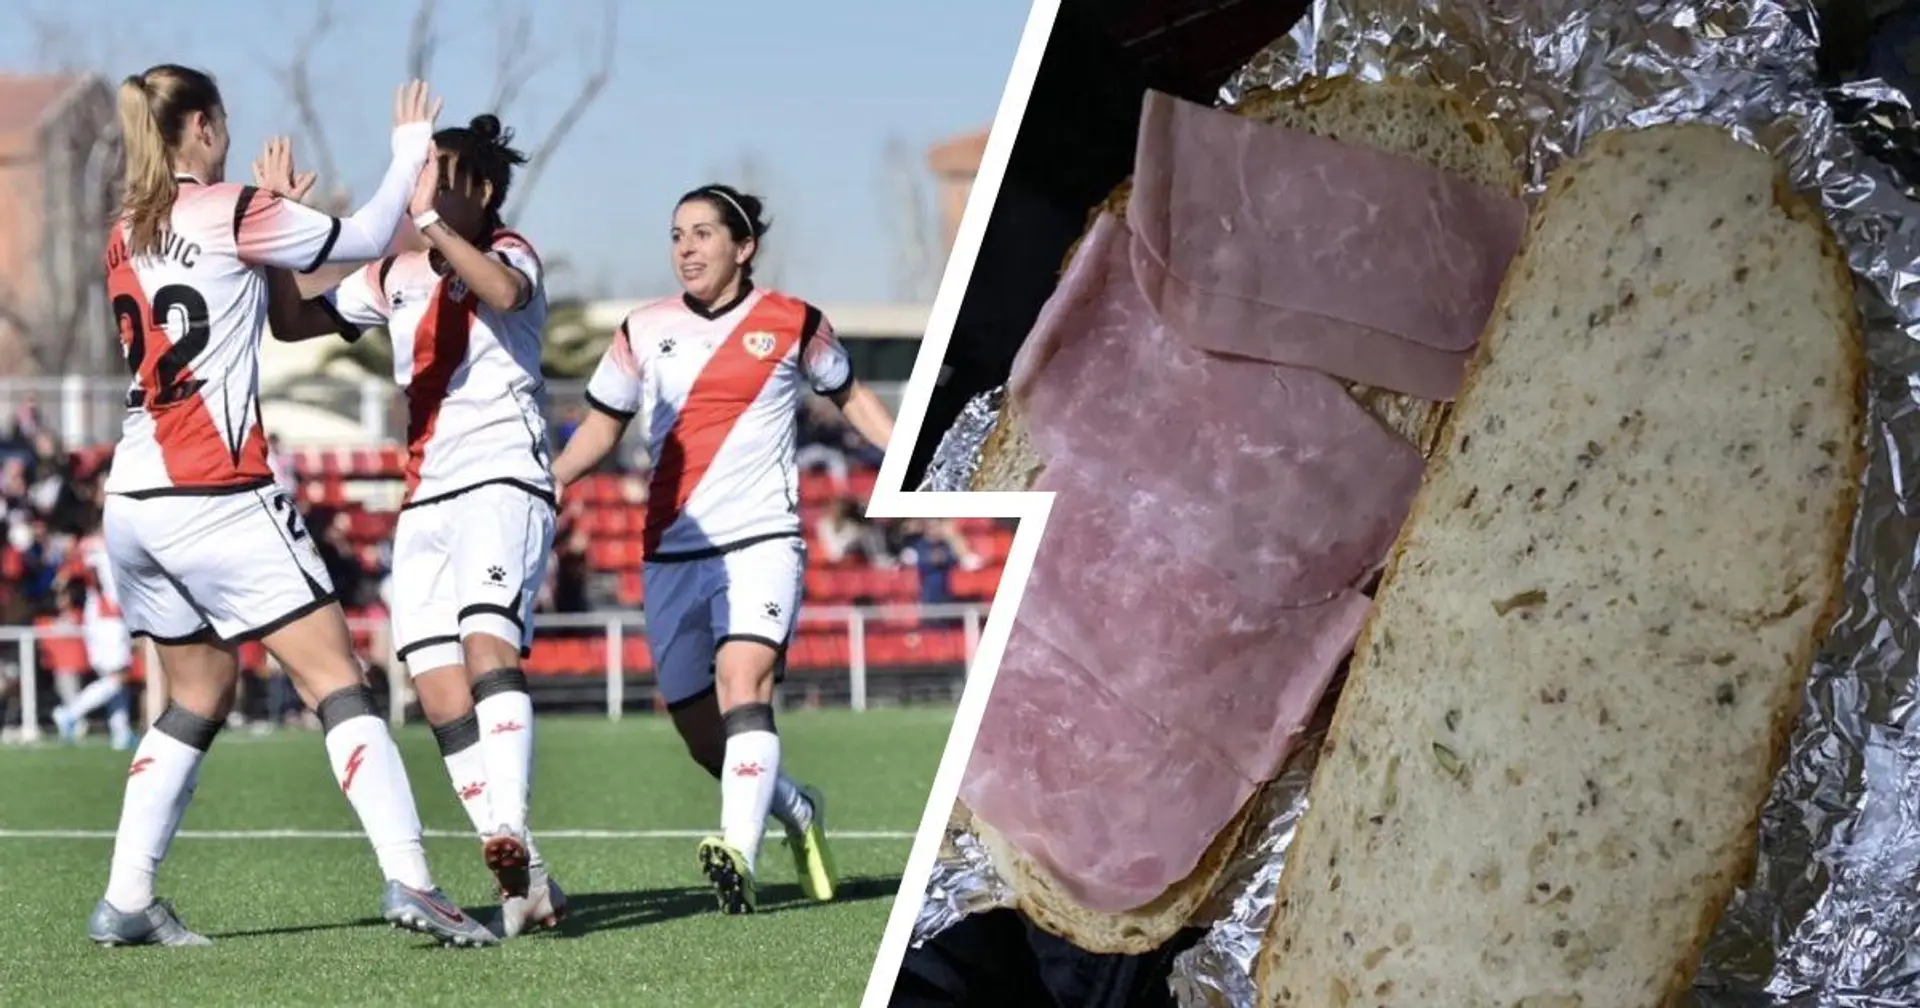 يشتكي فريق السيدات الإسباني بعد أن قدم له النادي شطائر لحم الخنزير كوجبة بعد المباراة